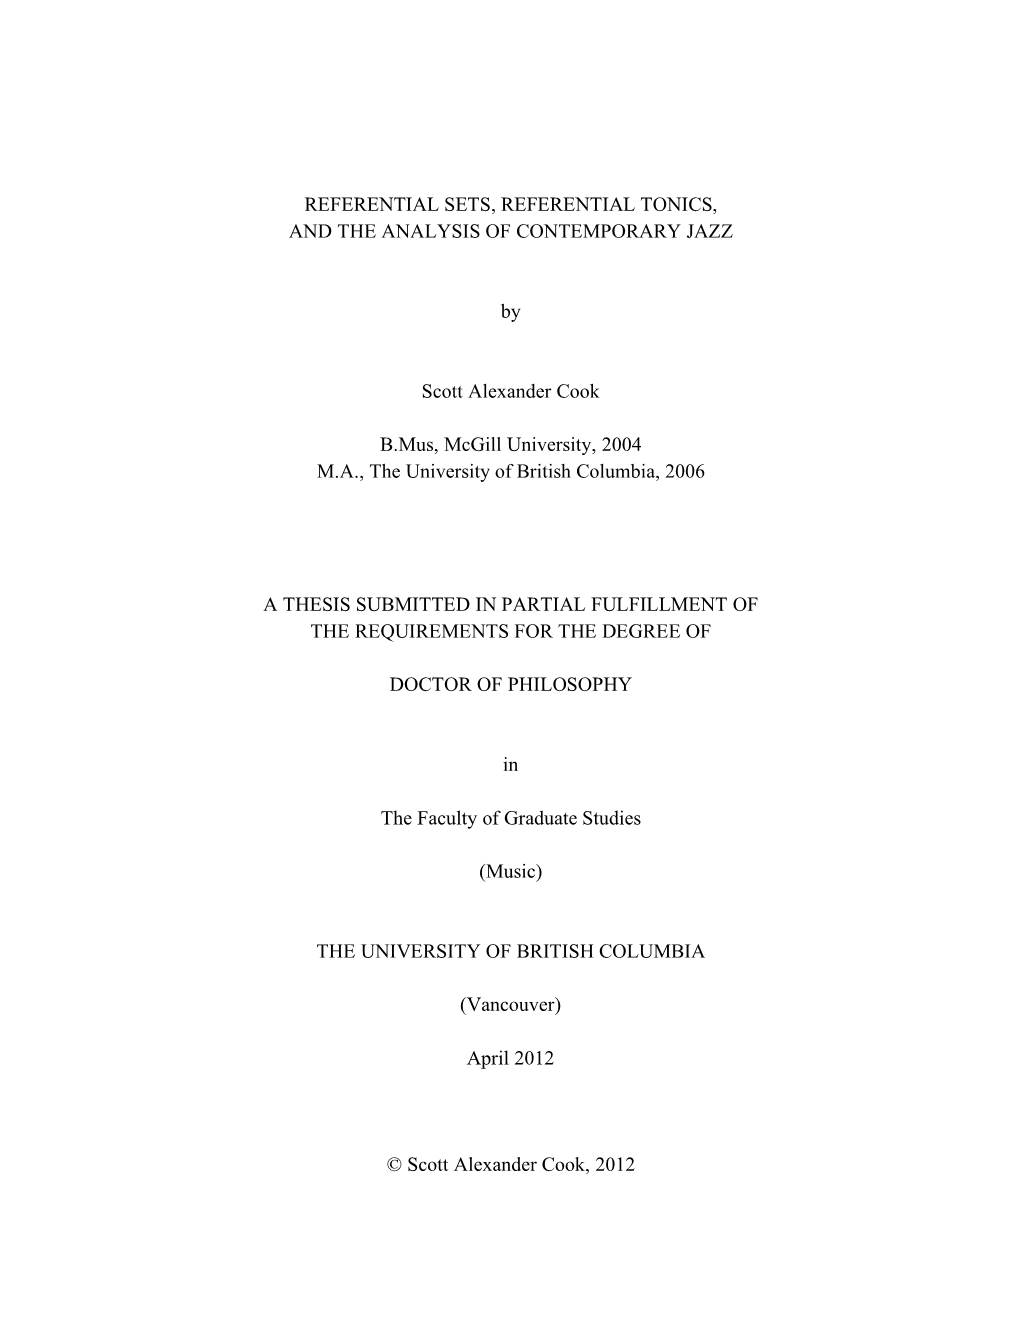 COOK Dissertation Referential Sets Referential Tonics Revised 01